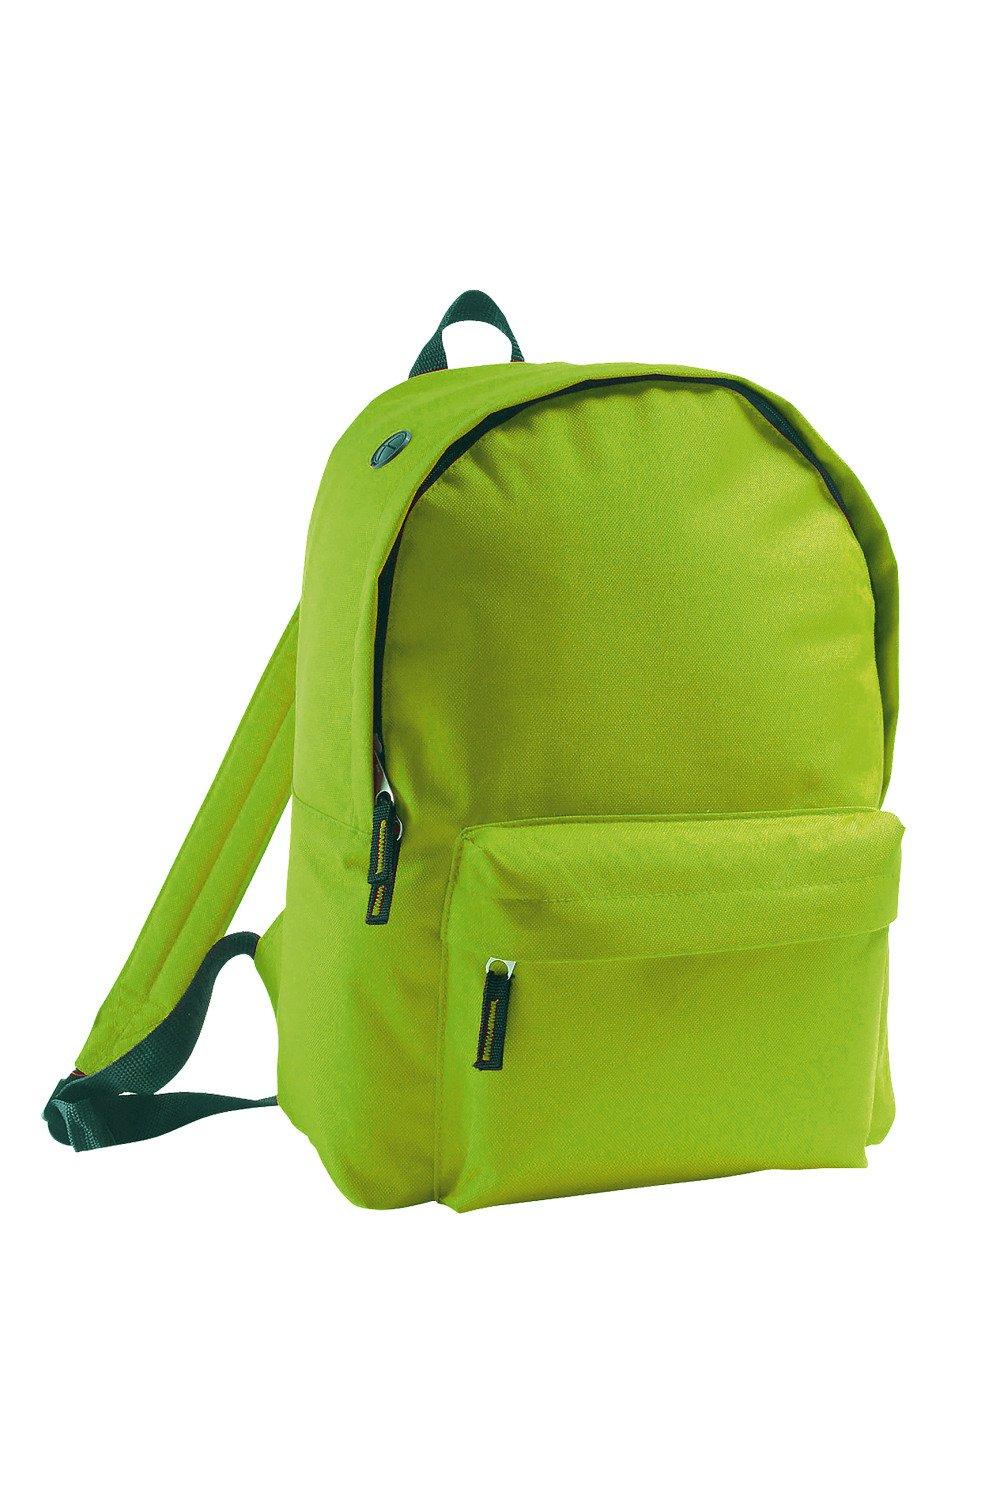 Рюкзак / сумка-рюкзак Rider SOL'S, зеленый рюкзак rider красный